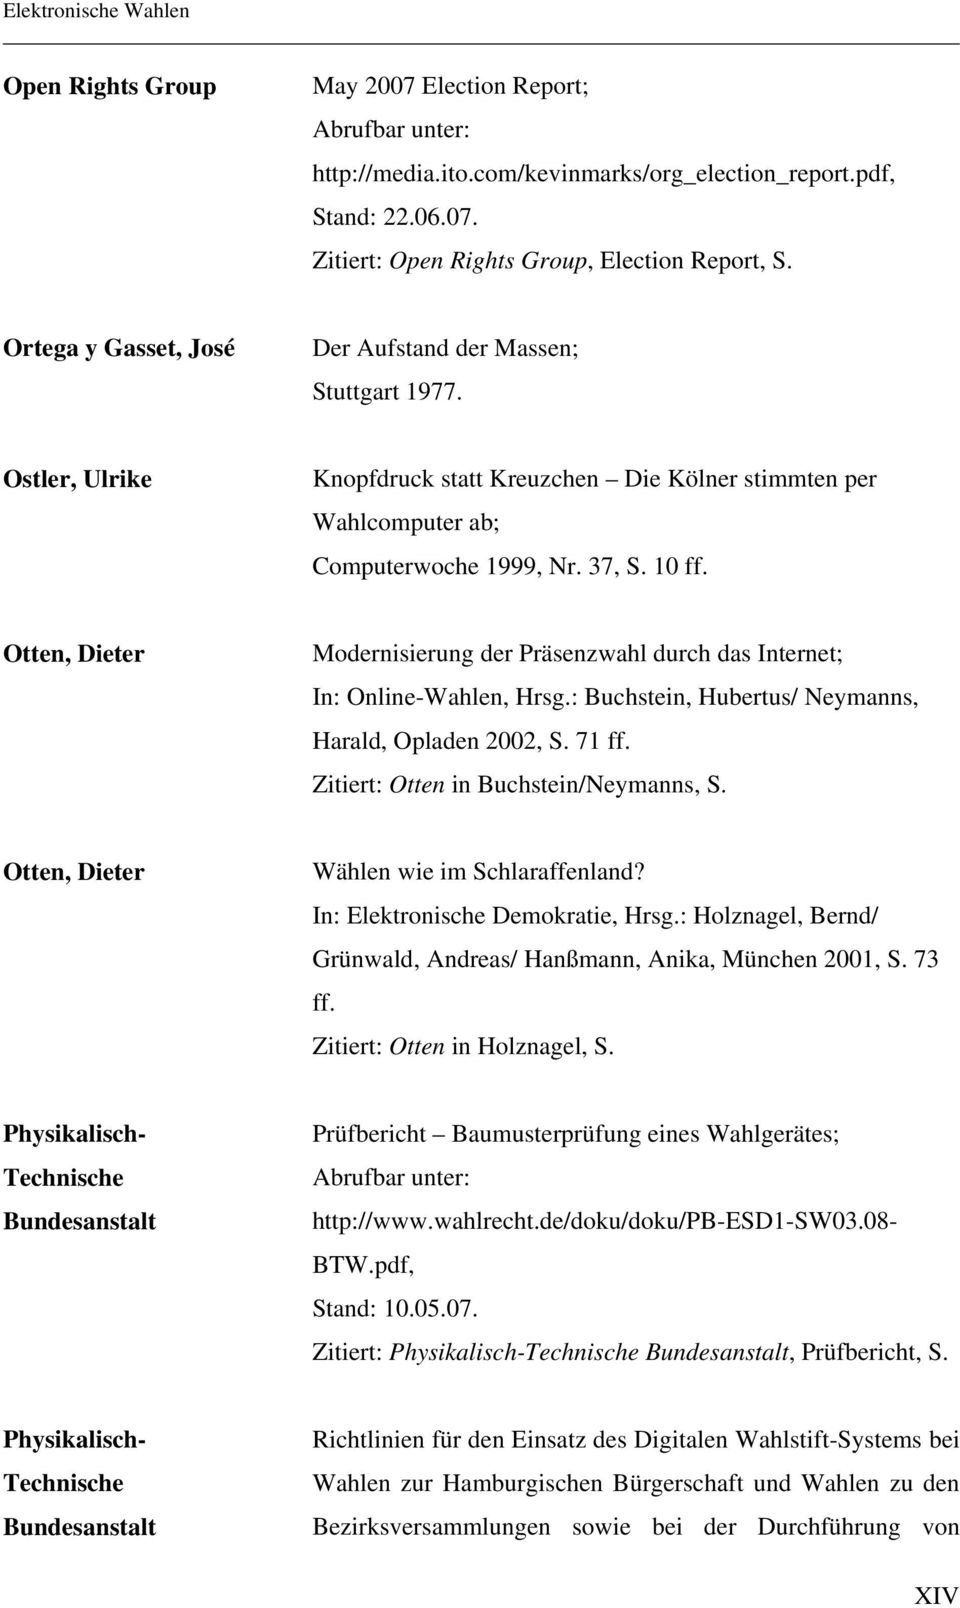 Otten, Dieter Modernisierung der Präsenzwahl durch das Internet; In: Online-Wahlen, Hrsg.: Buchstein, Hubertus/ Neymanns, Harald, Opladen 2002, S. 71 ff. Zitiert: Otten in Buchstein/Neymanns, S.